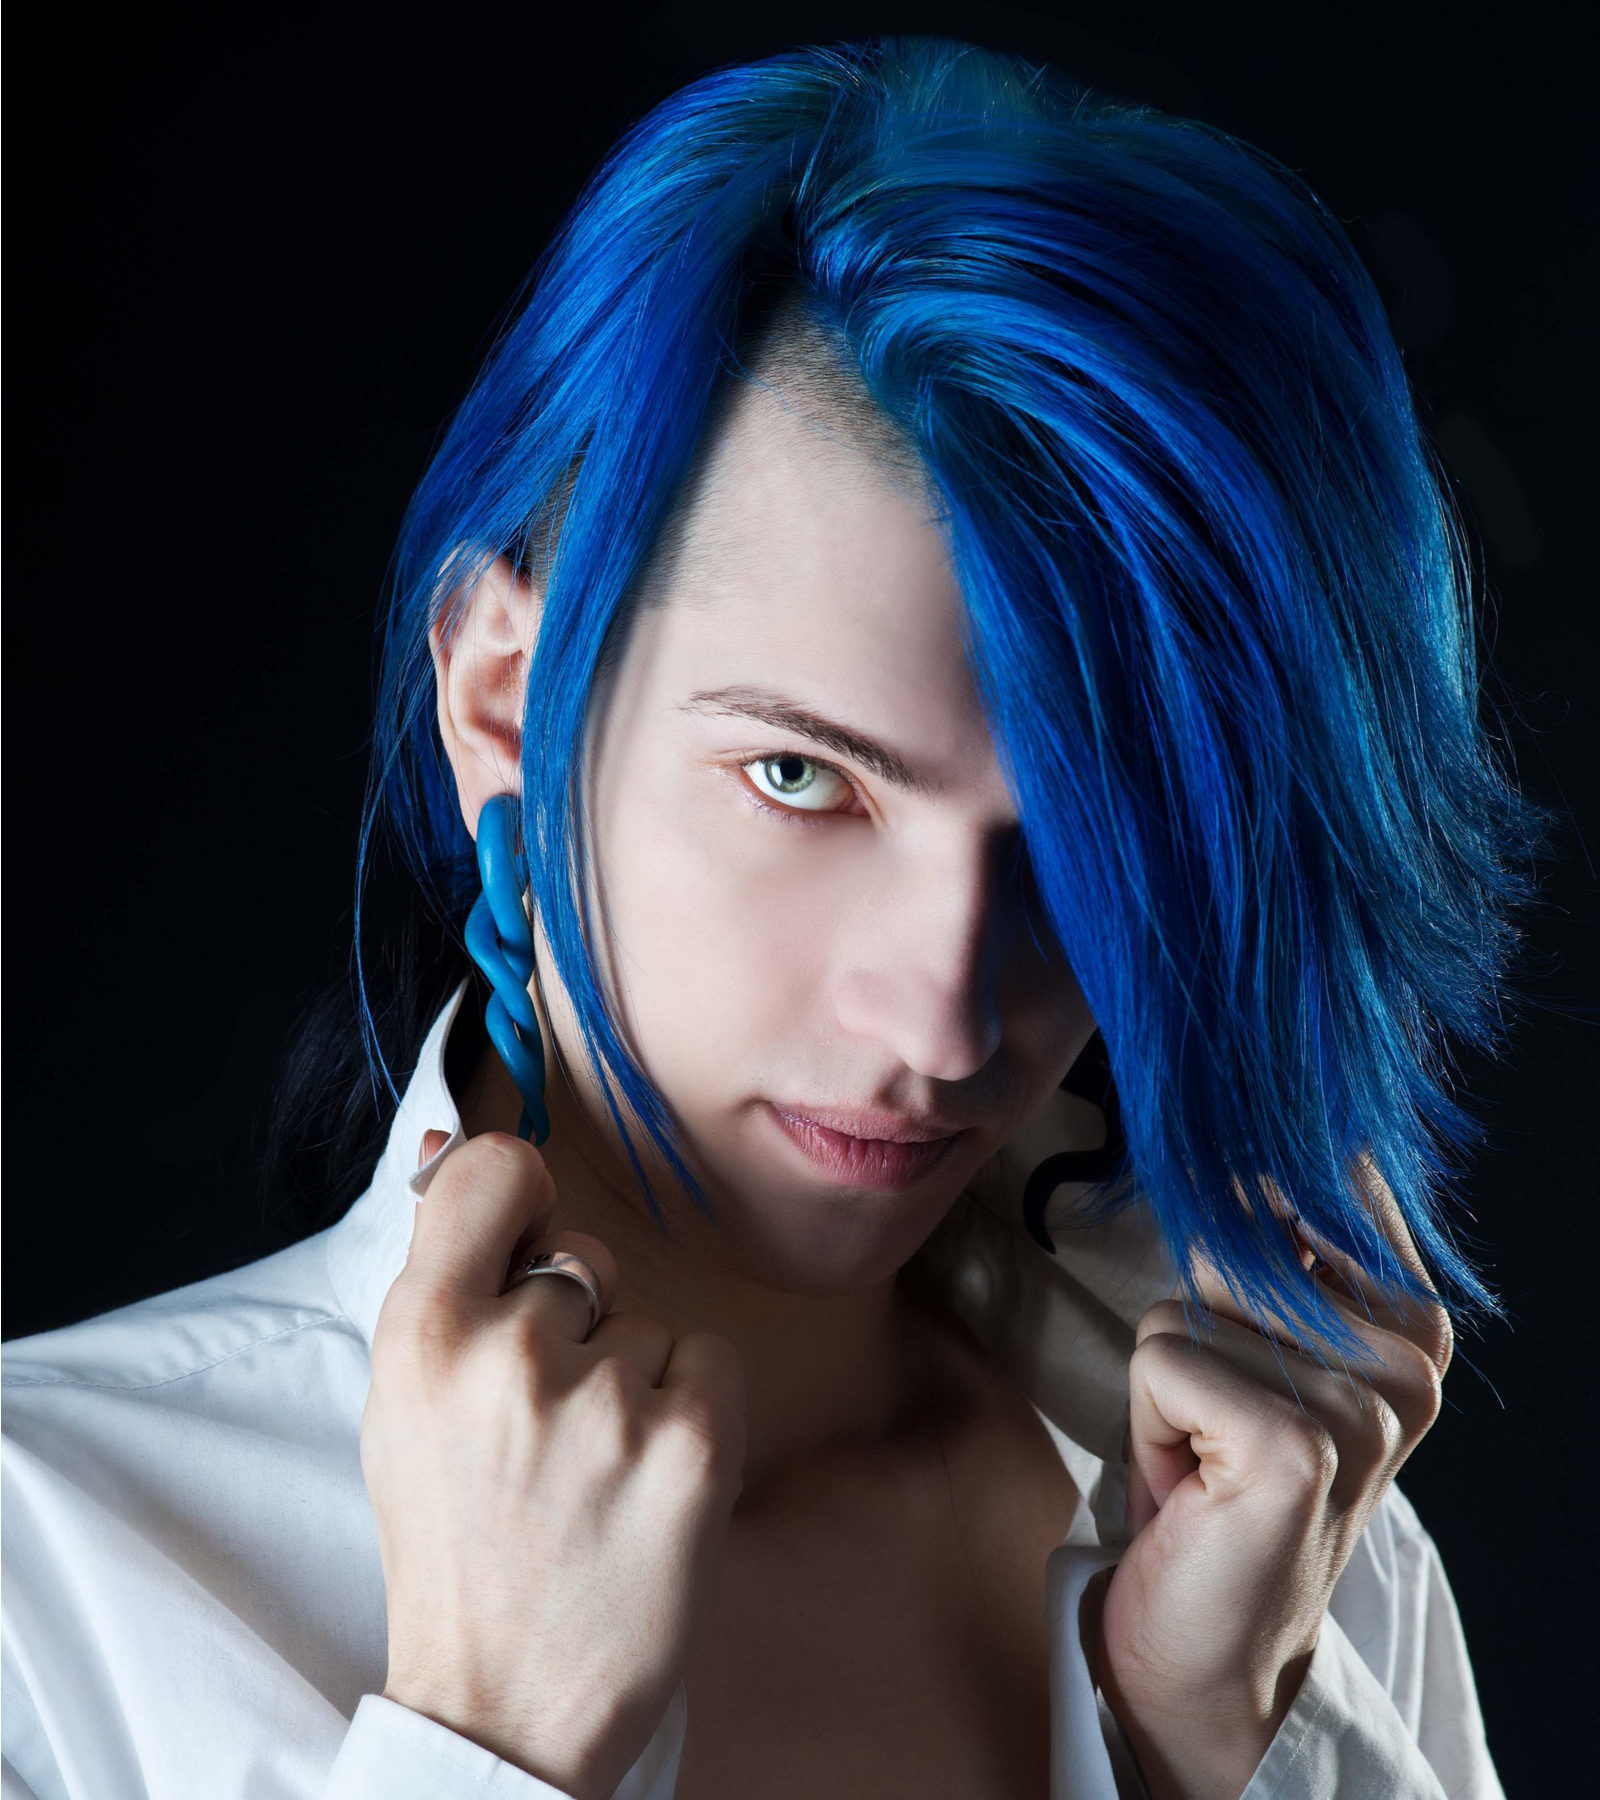 Vivid Electric Blue hair color idea for men